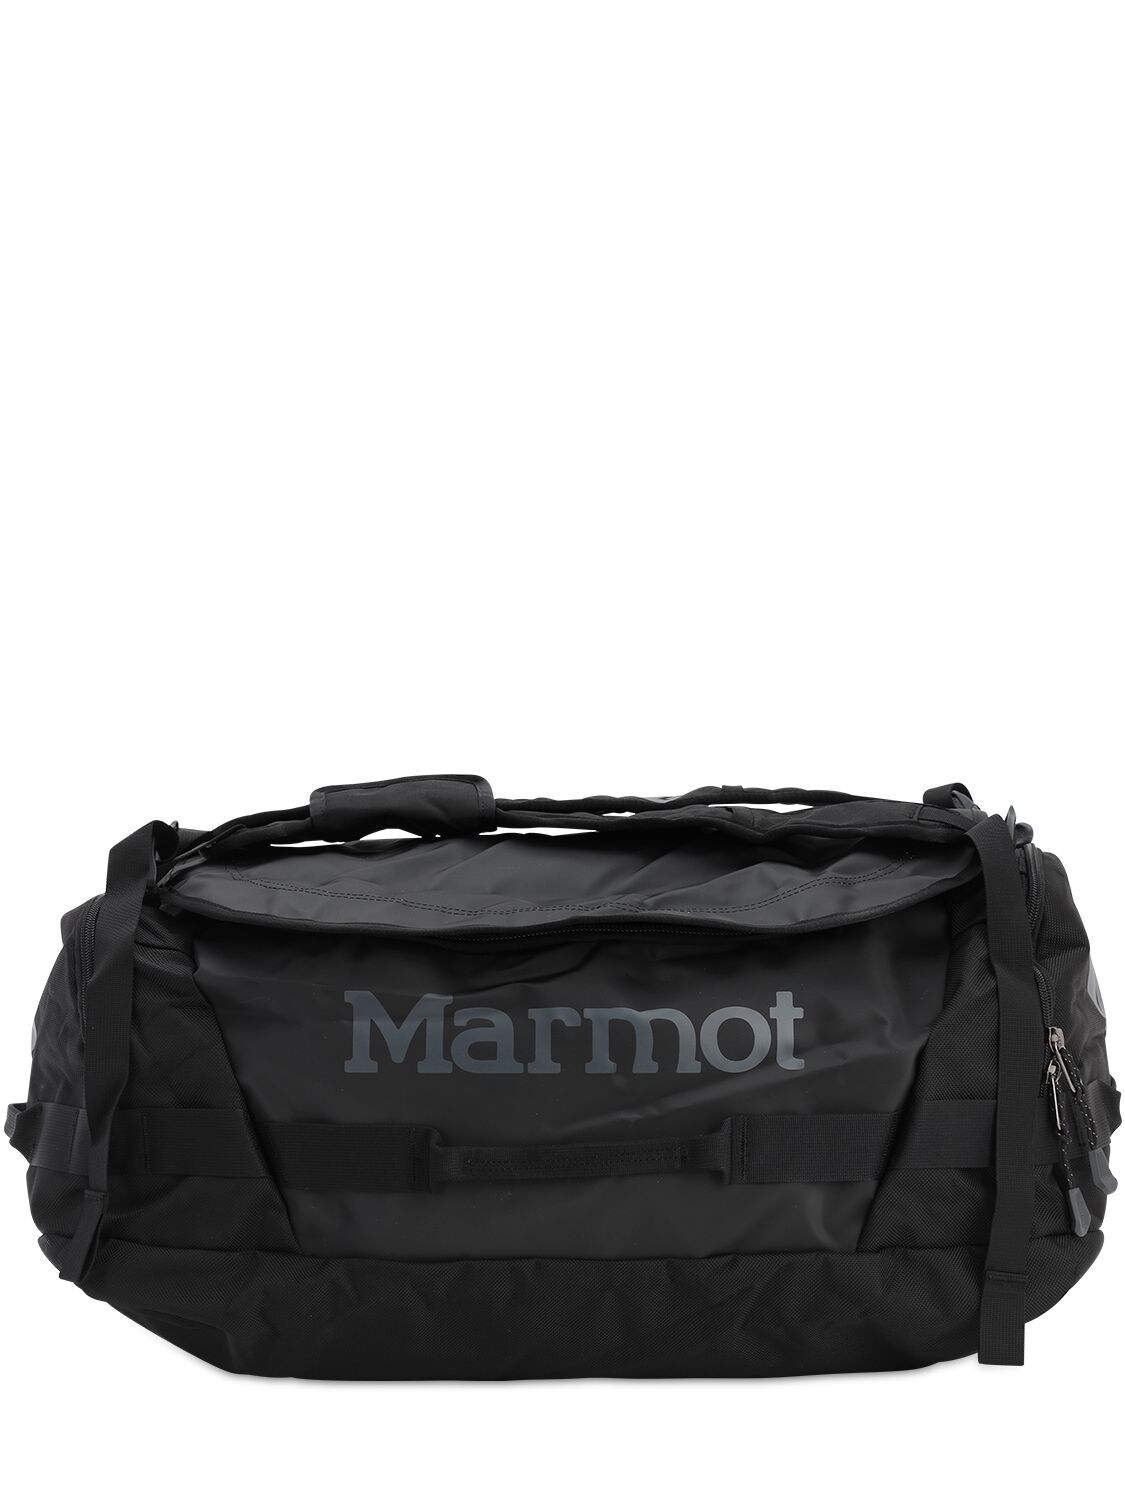 Marmot Long Hauler Medium Duffel In Black